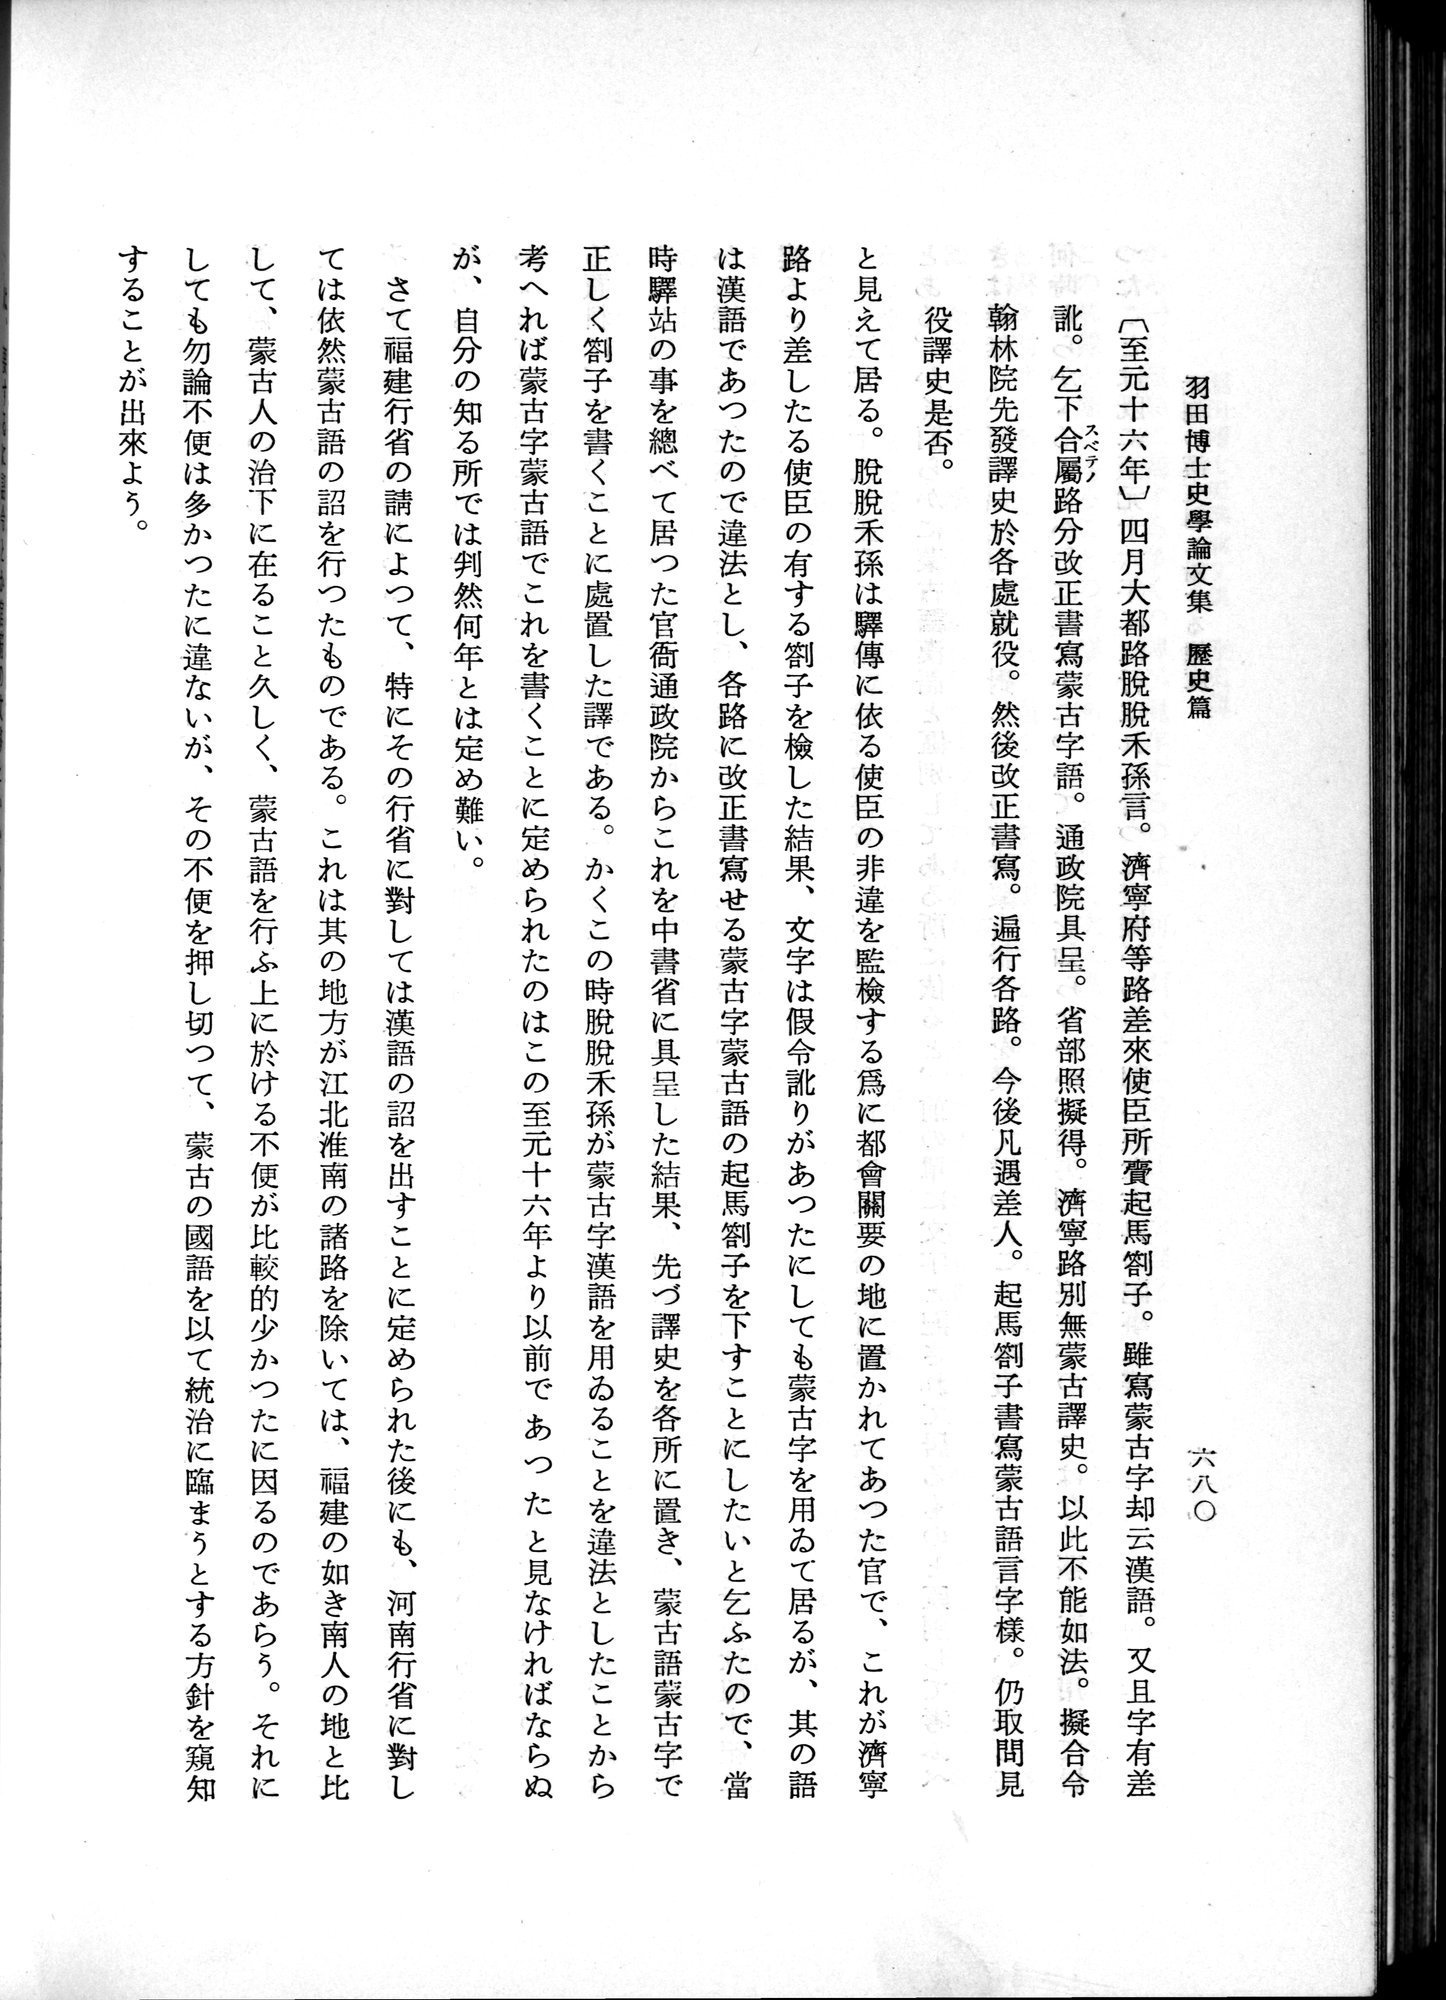 羽田博士史学論文集 : vol.1 / Page 718 (Grayscale High Resolution Image)